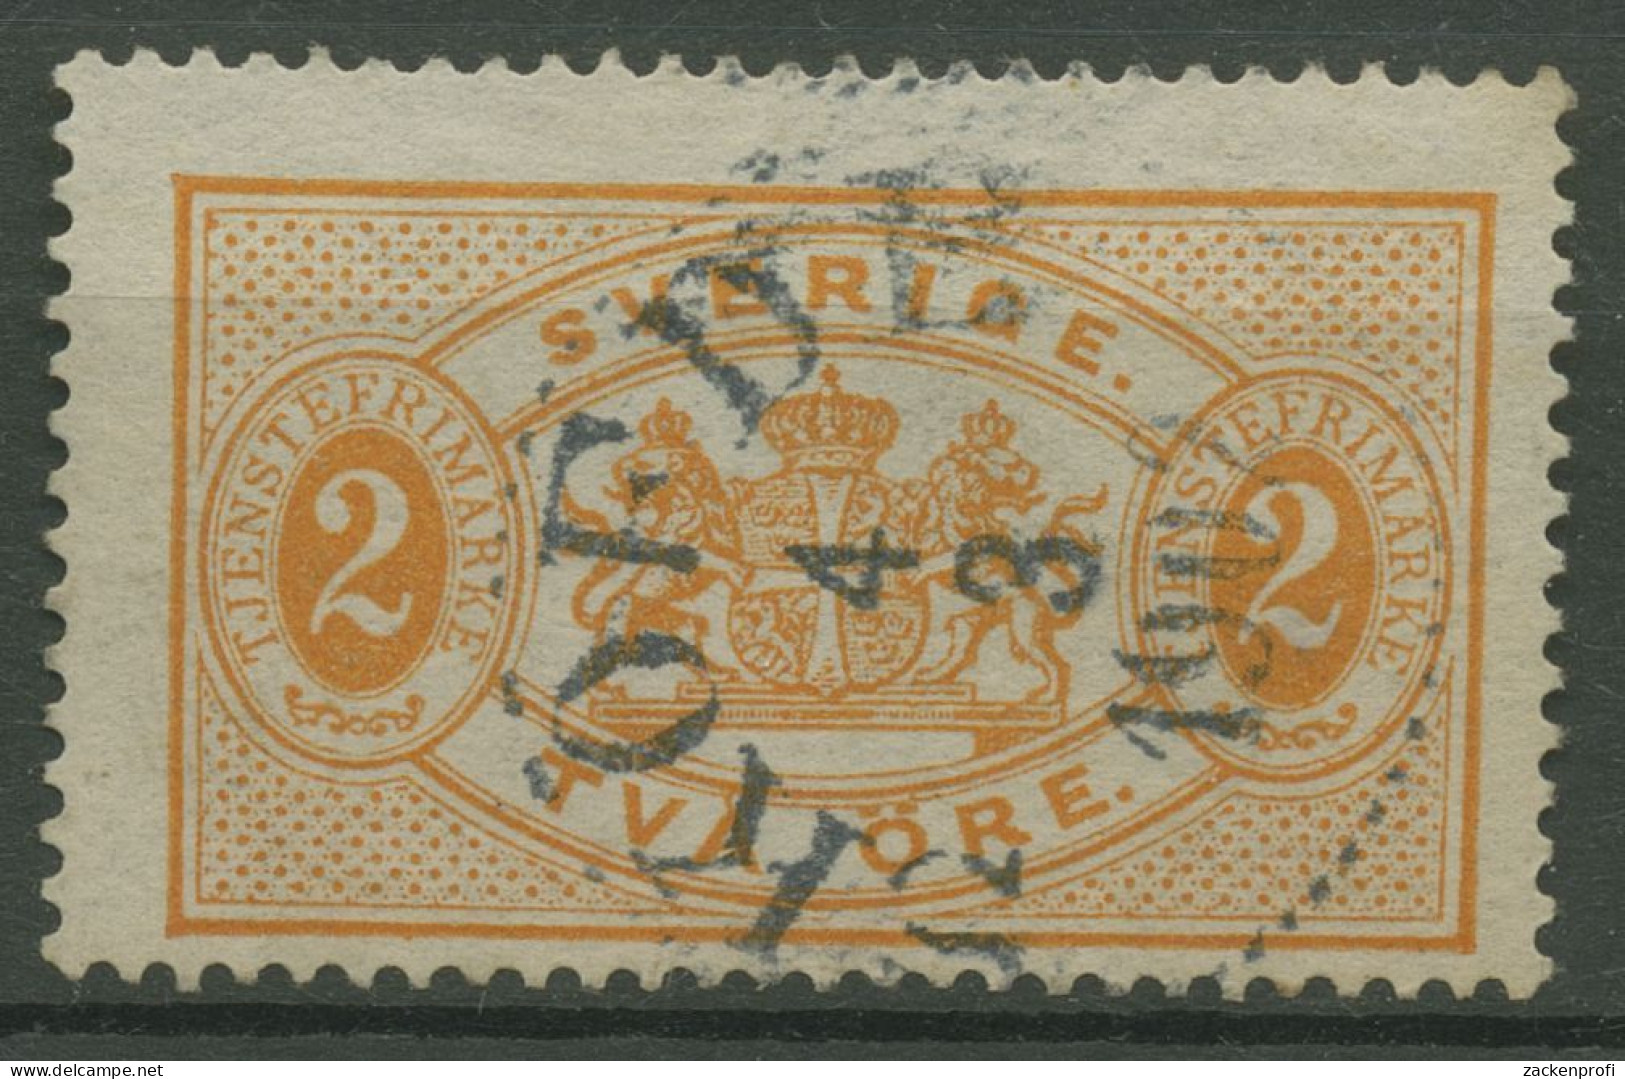 Schweden 1891 Dienstmarken Wappen D 14 Gestempelt - Service